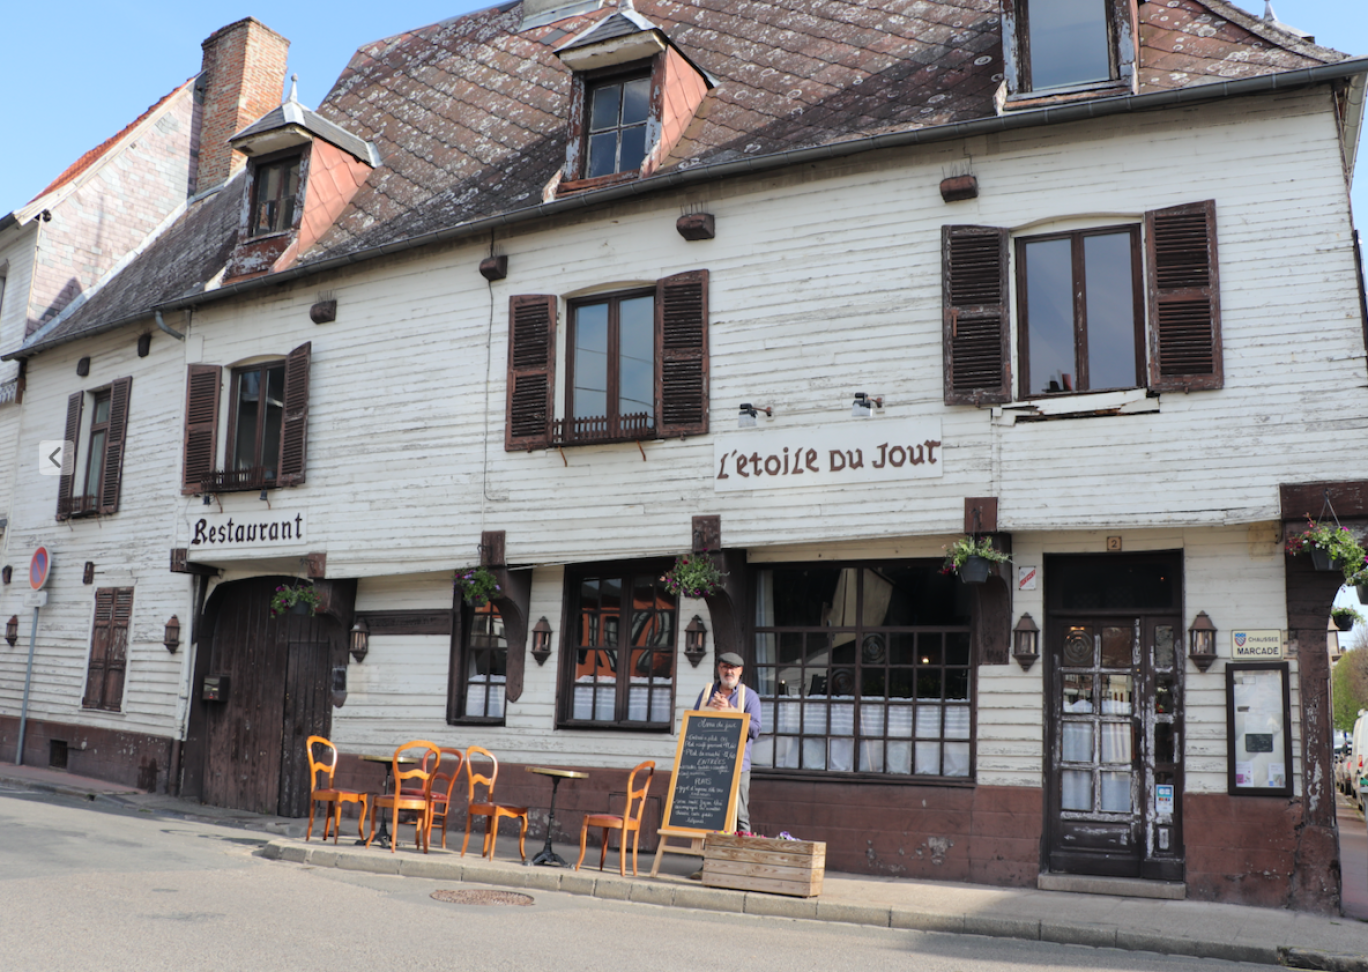 Le restaurant est abrité dans un bâtiment du XVIe siècle.